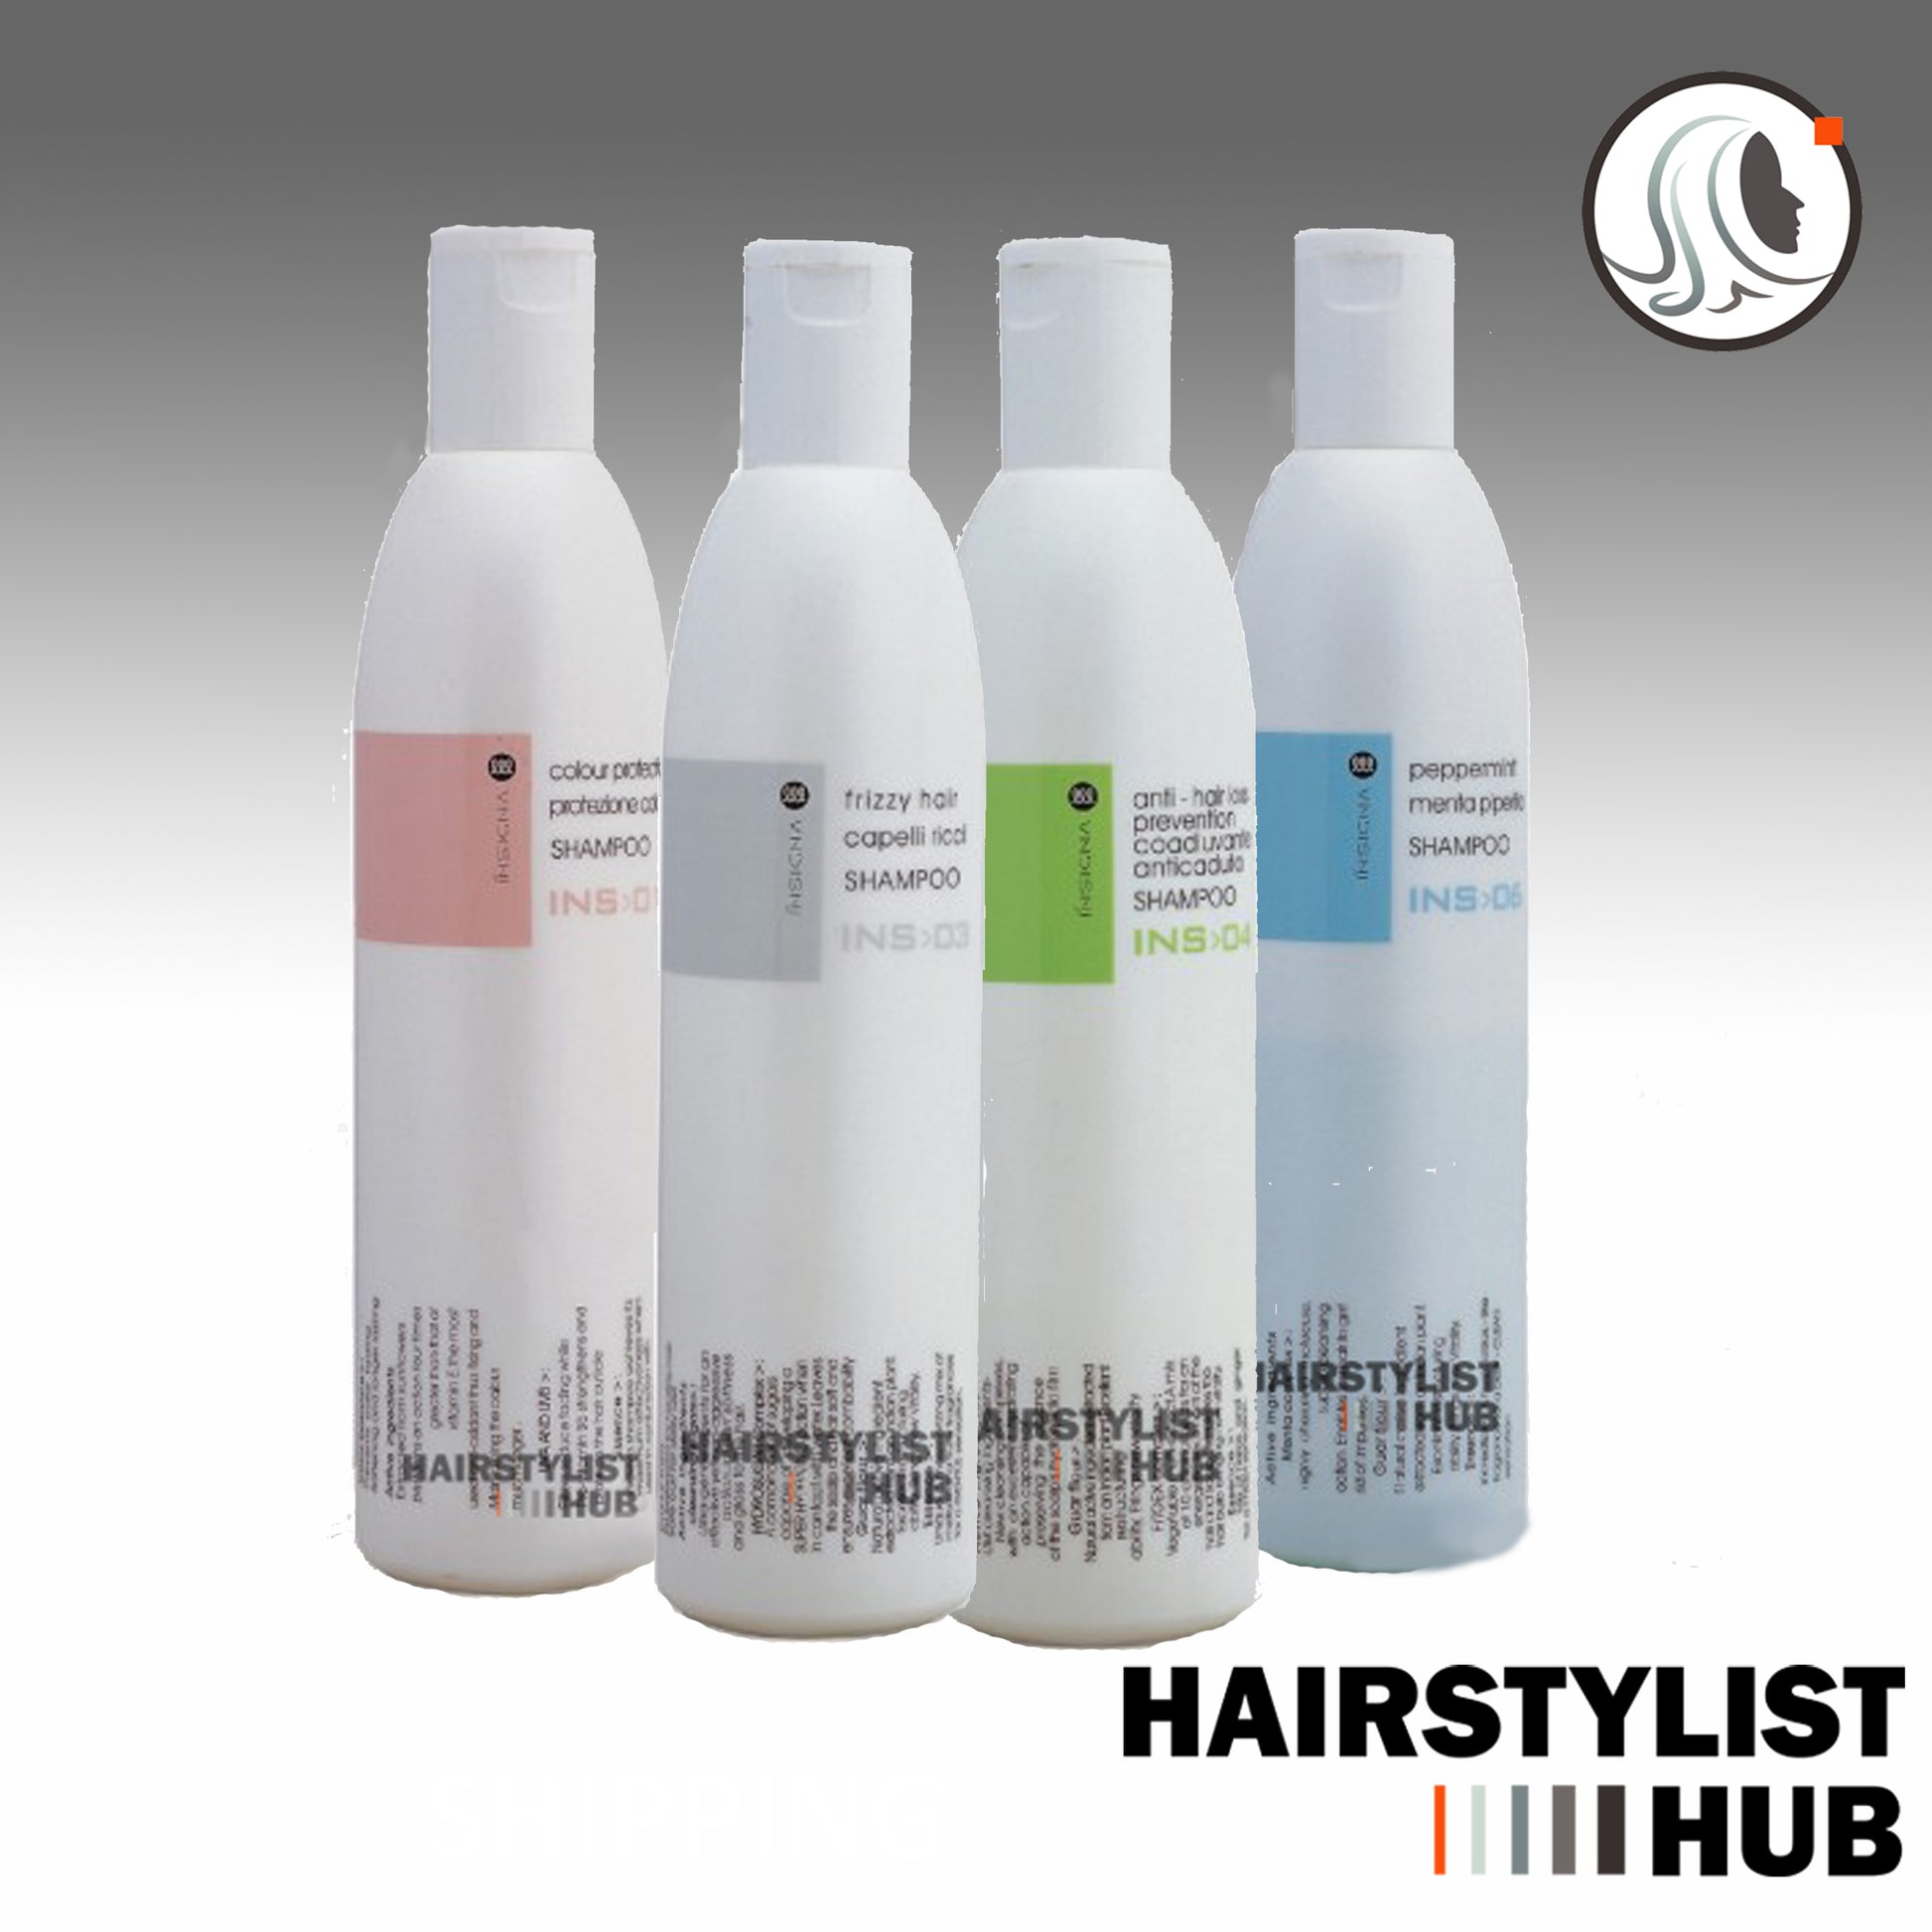 Insigna - Ionic Straighten Shampoo , Frizzy Hair Shampoo, Anti Hair Loss Shampoo